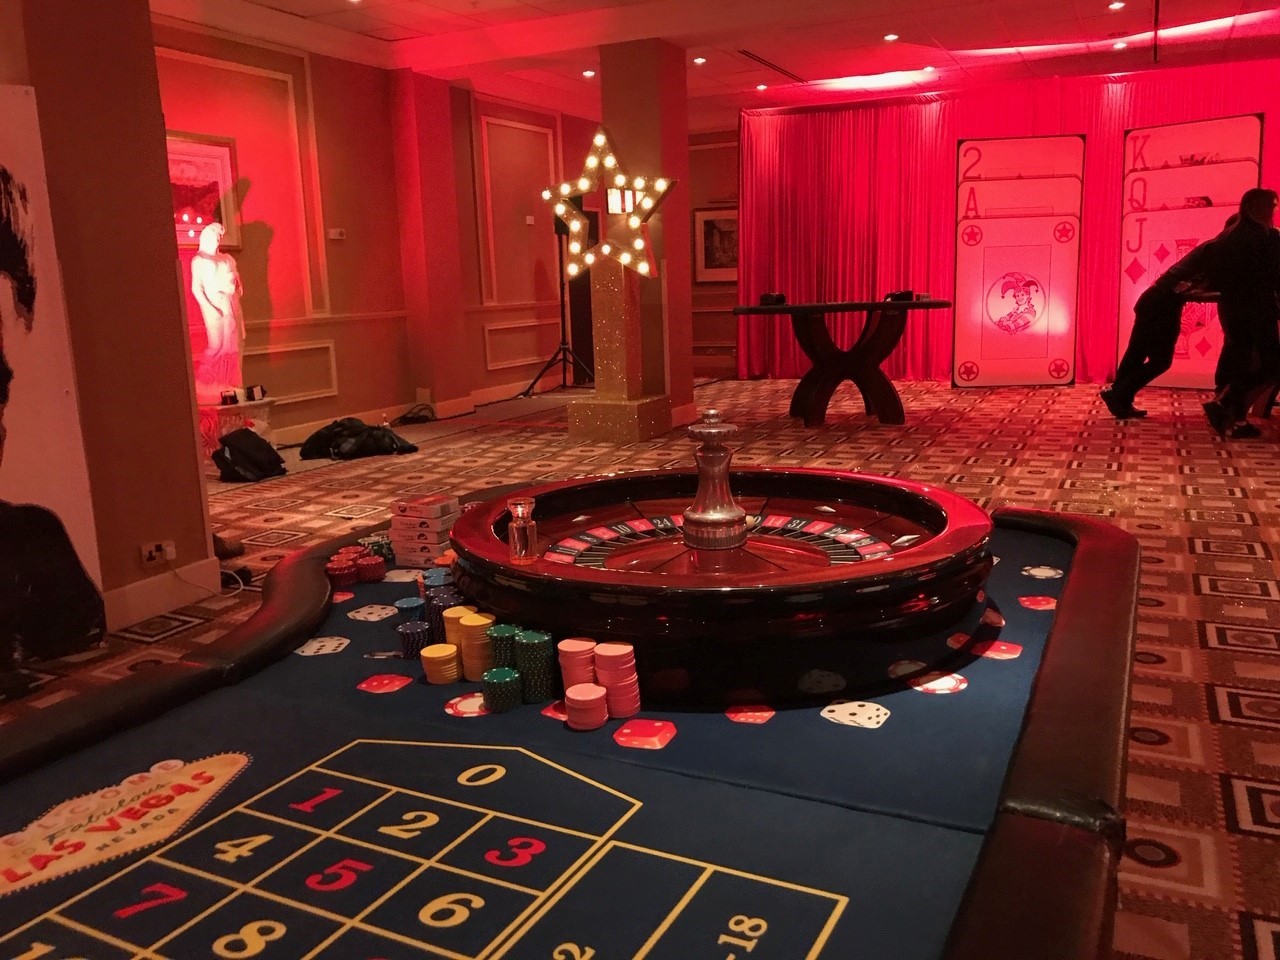 Las Vegas Theme Roulette Table